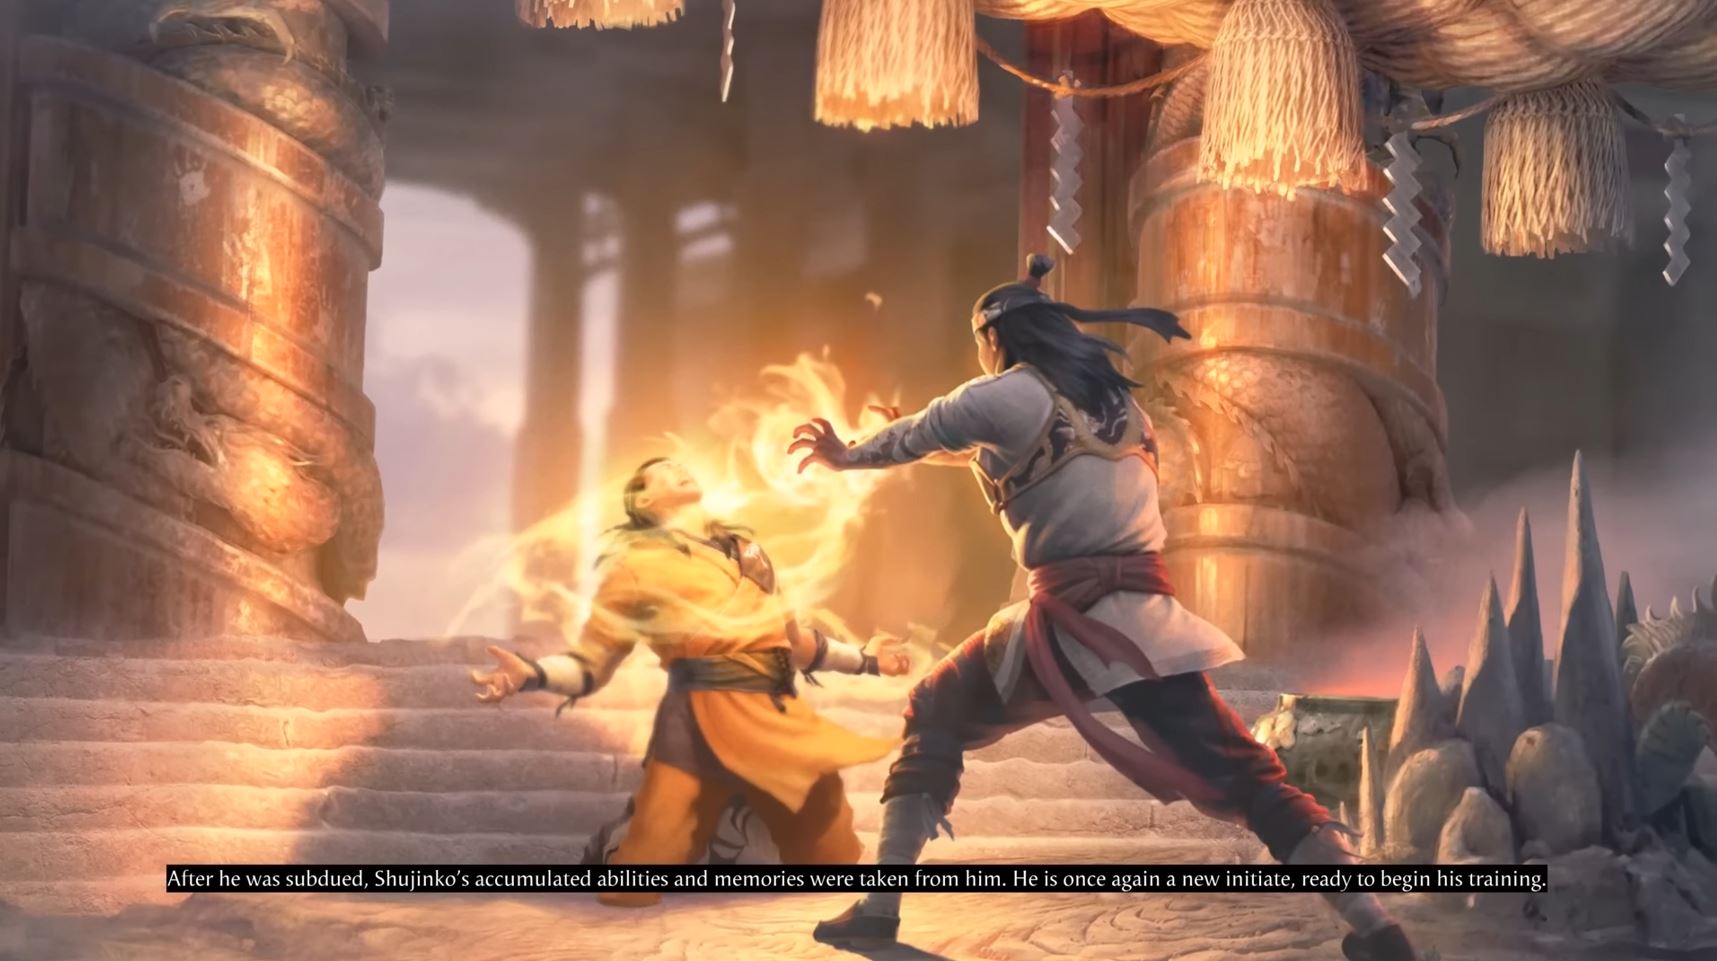 Shujinko loses his memories and power in Mortal Kombat 1.